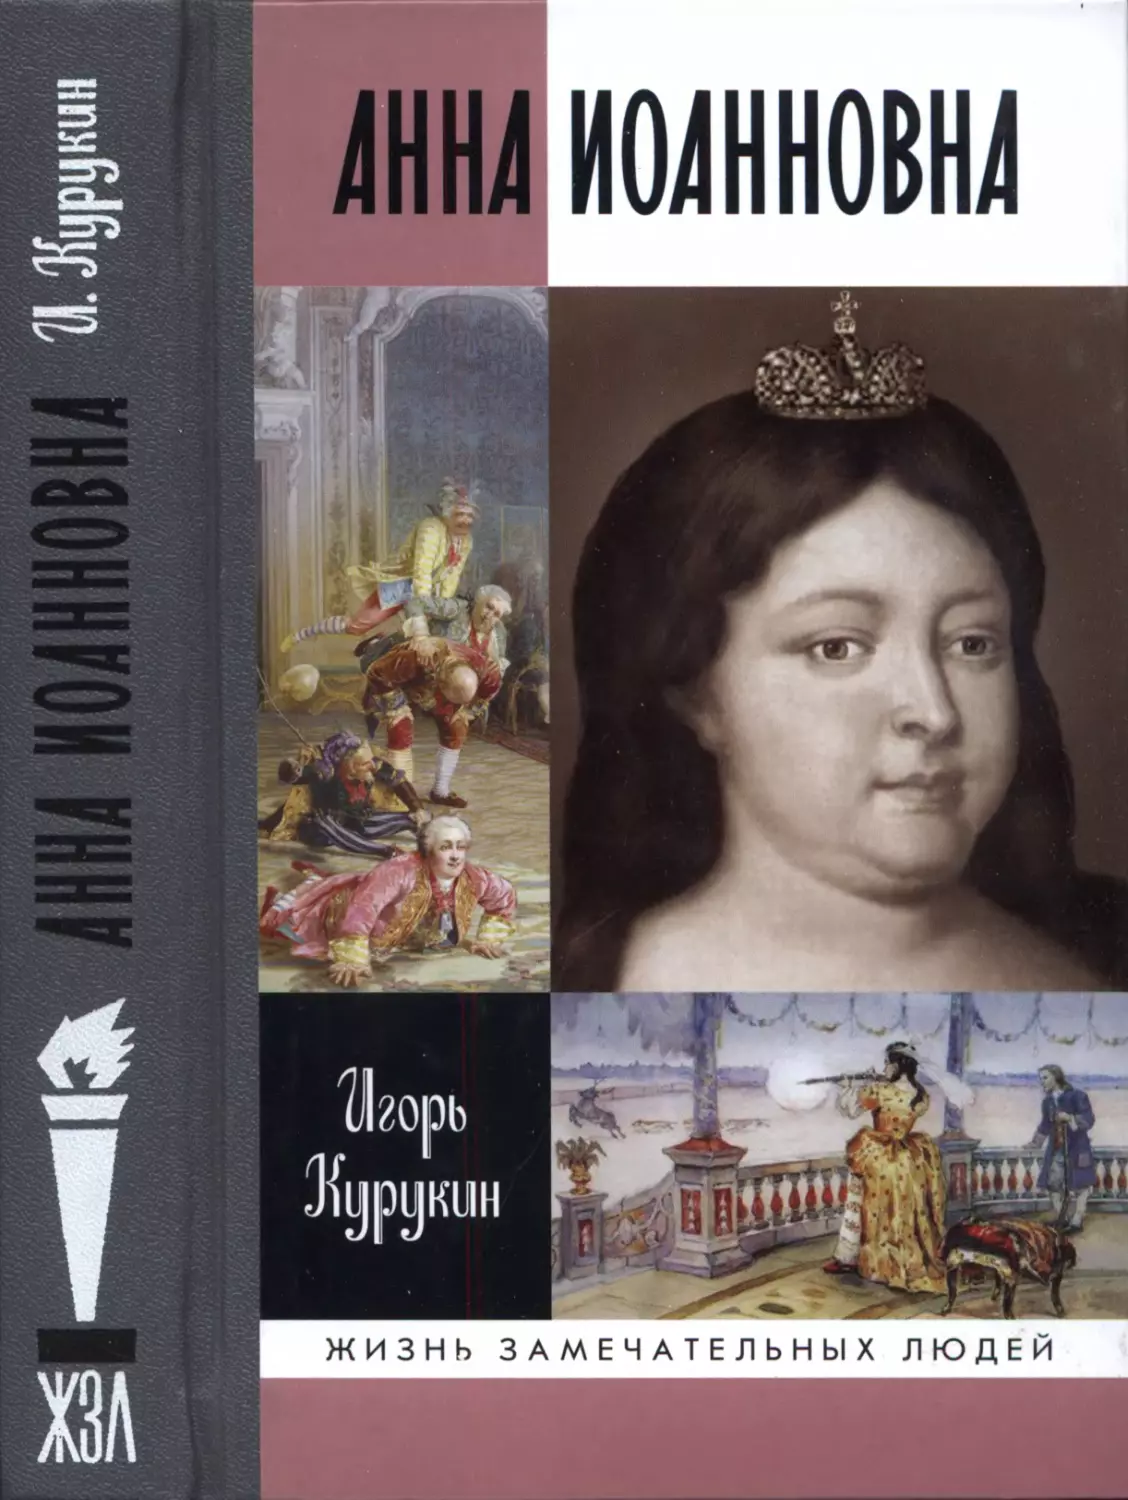 Анна Иоанновна